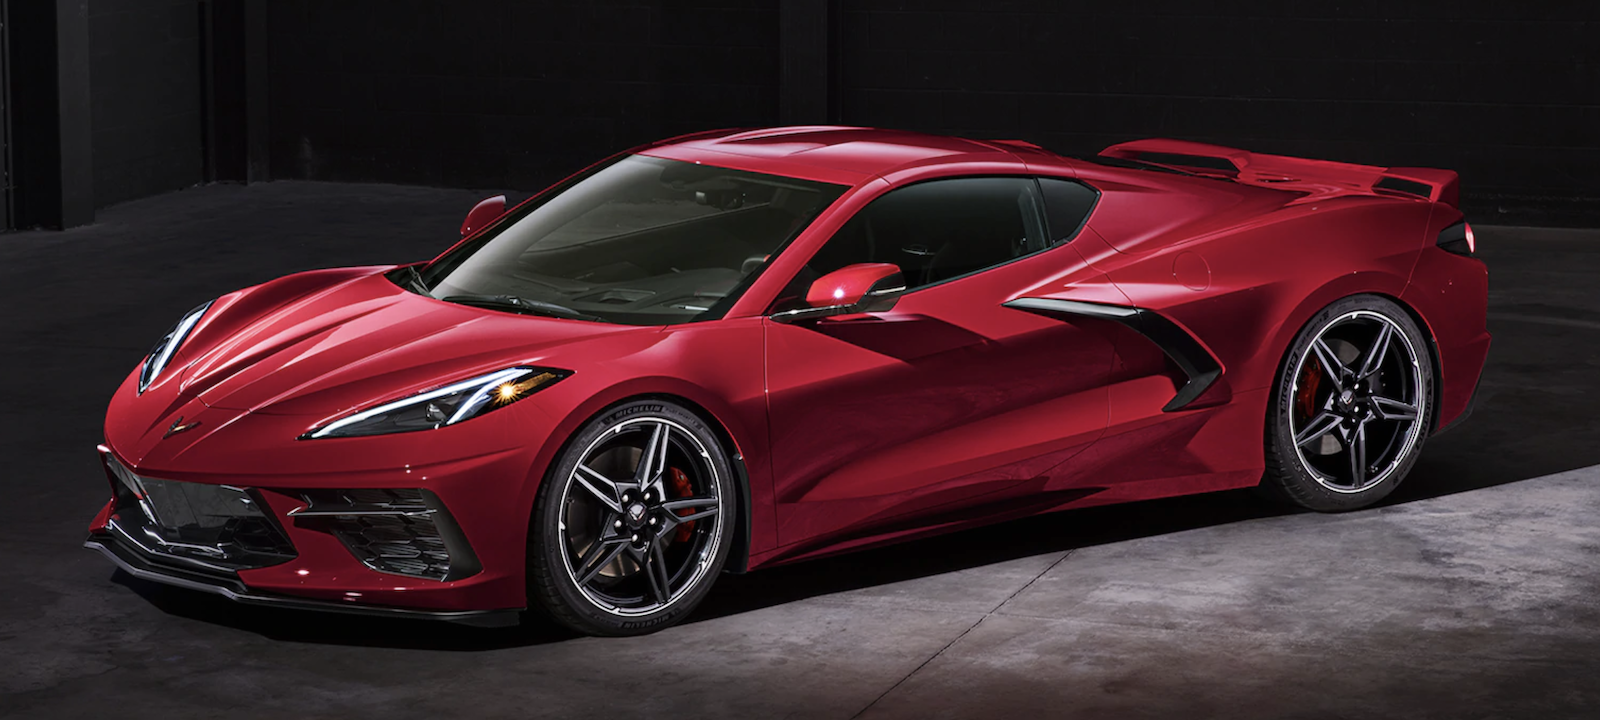 Design: The 2020 Corvette